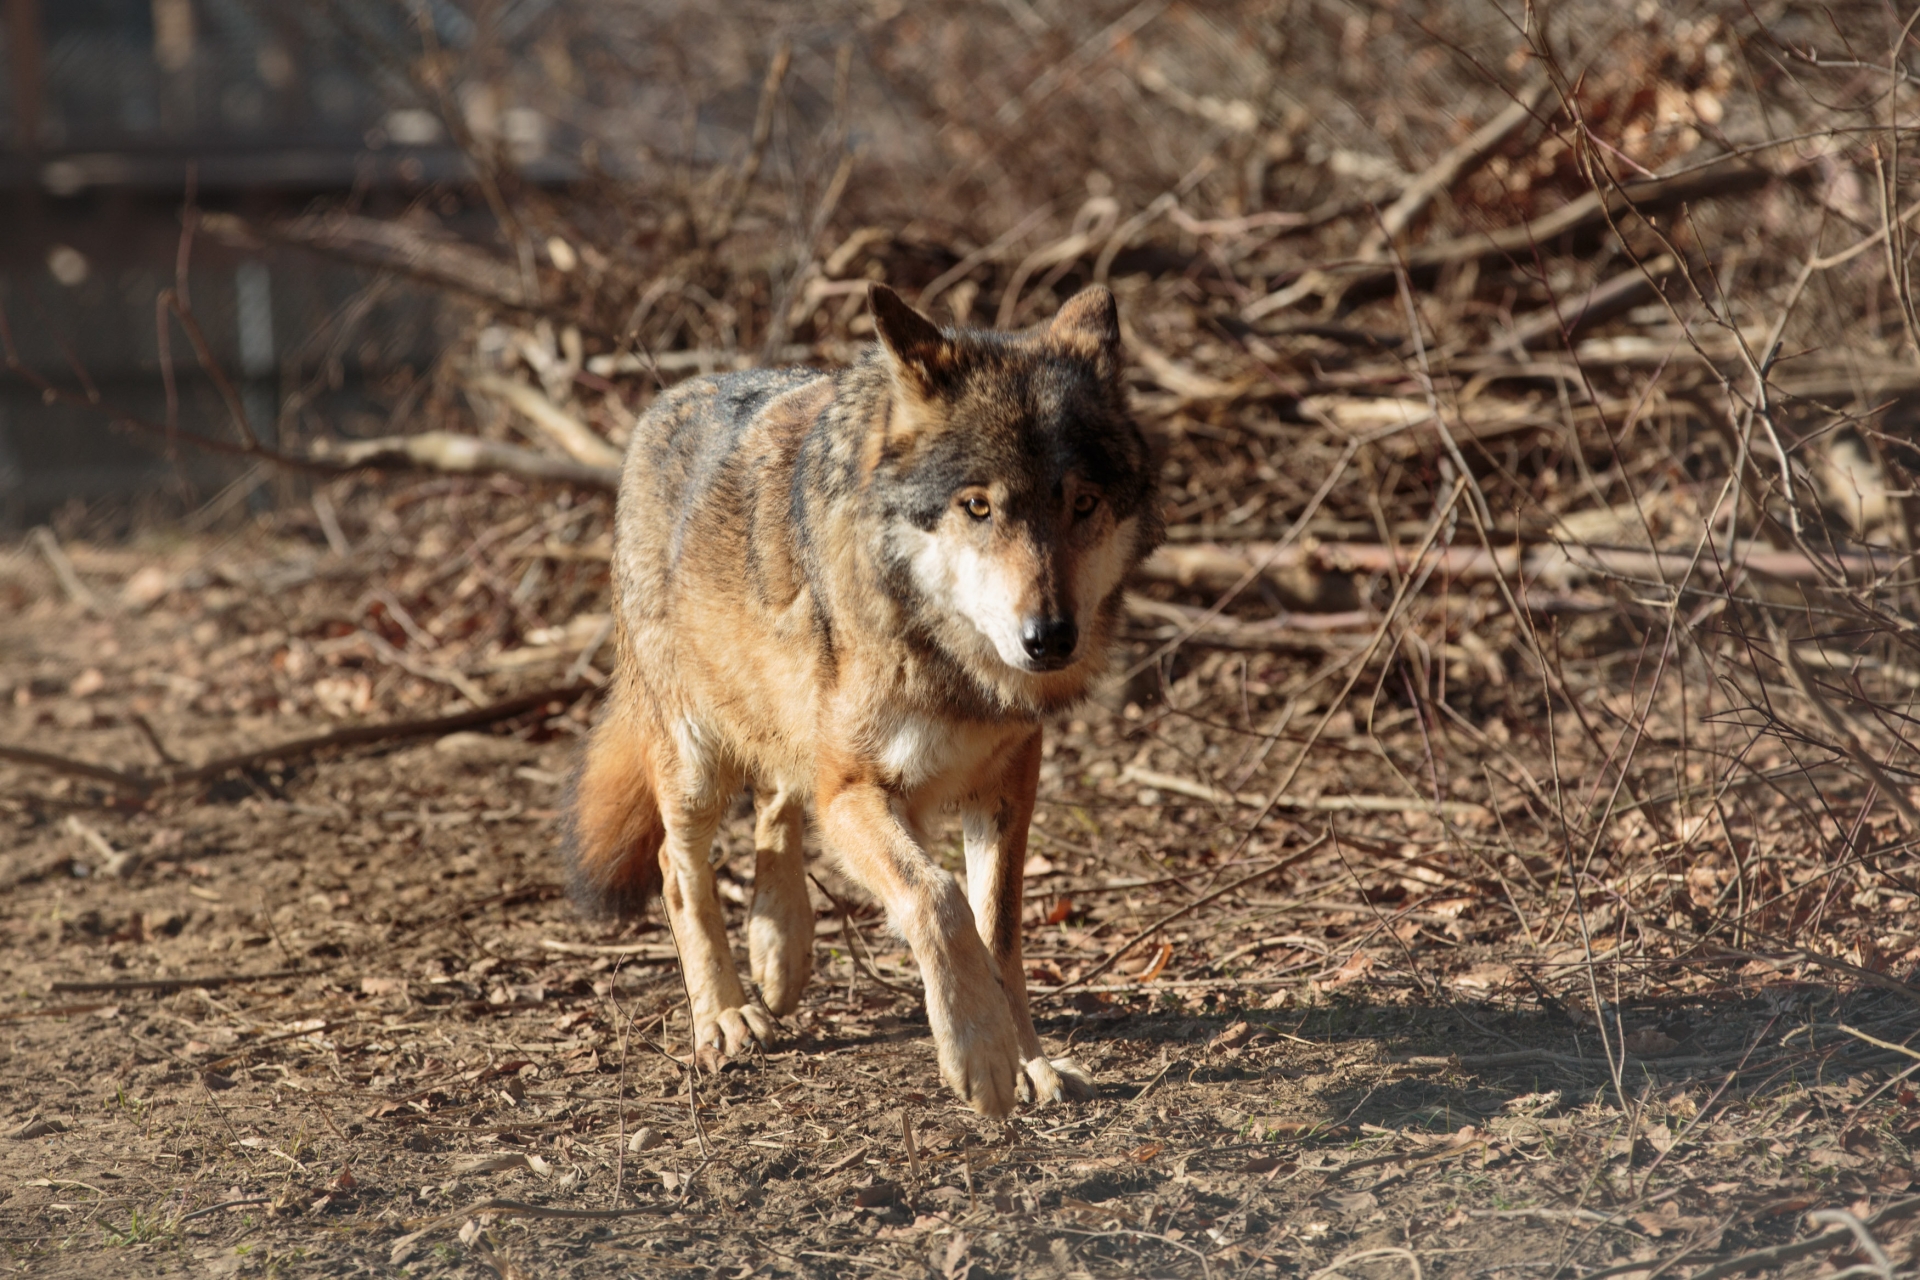 Le loup aurait été vu à plusieurs reprises dans les zones habitées sur le territoire de la commune d'Hérémence.